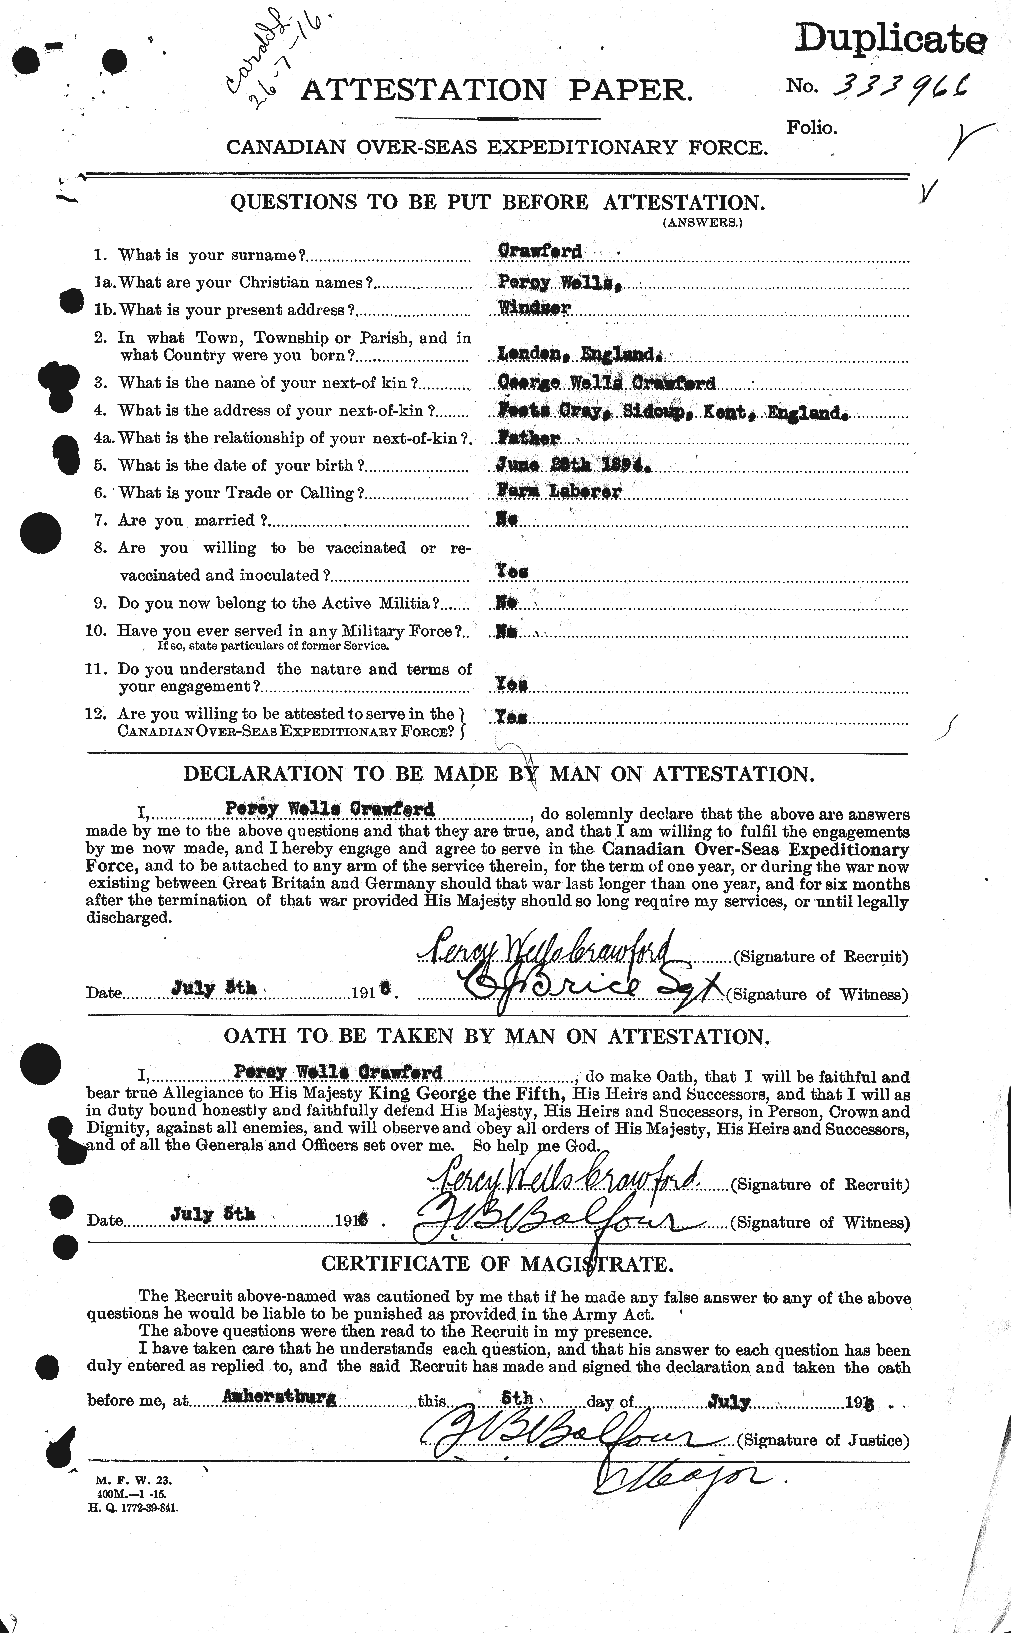 Dossiers du Personnel de la Première Guerre mondiale - CEC 061653a